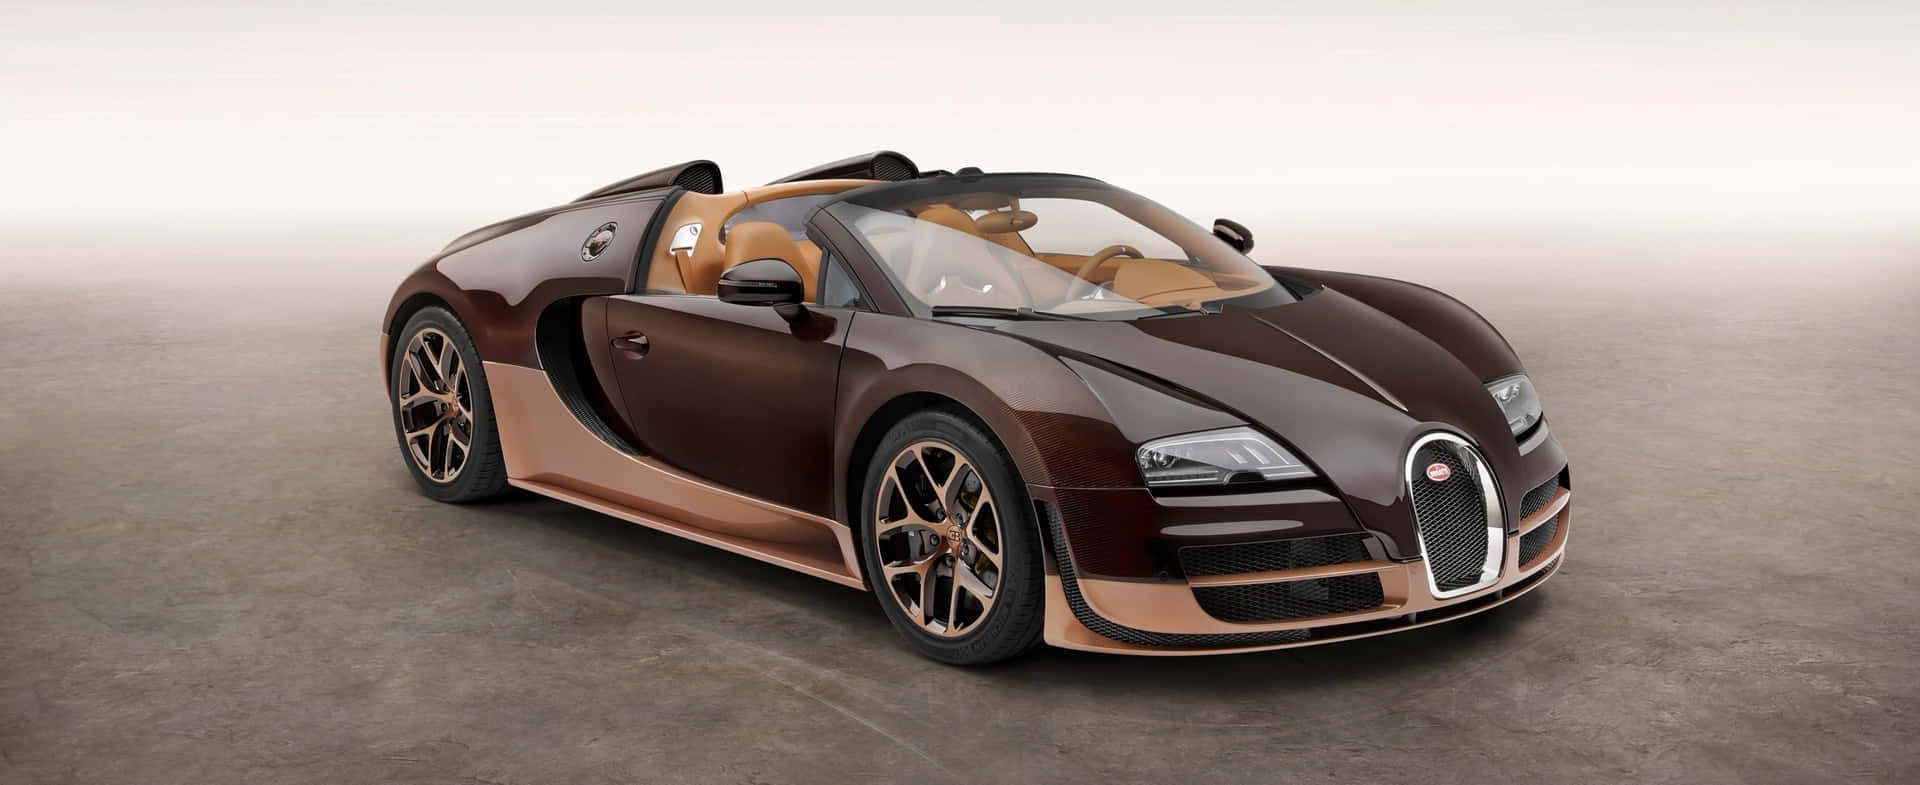 Mejorcoche De Lujo Bugatti Veyron Convertible Fondo de pantalla